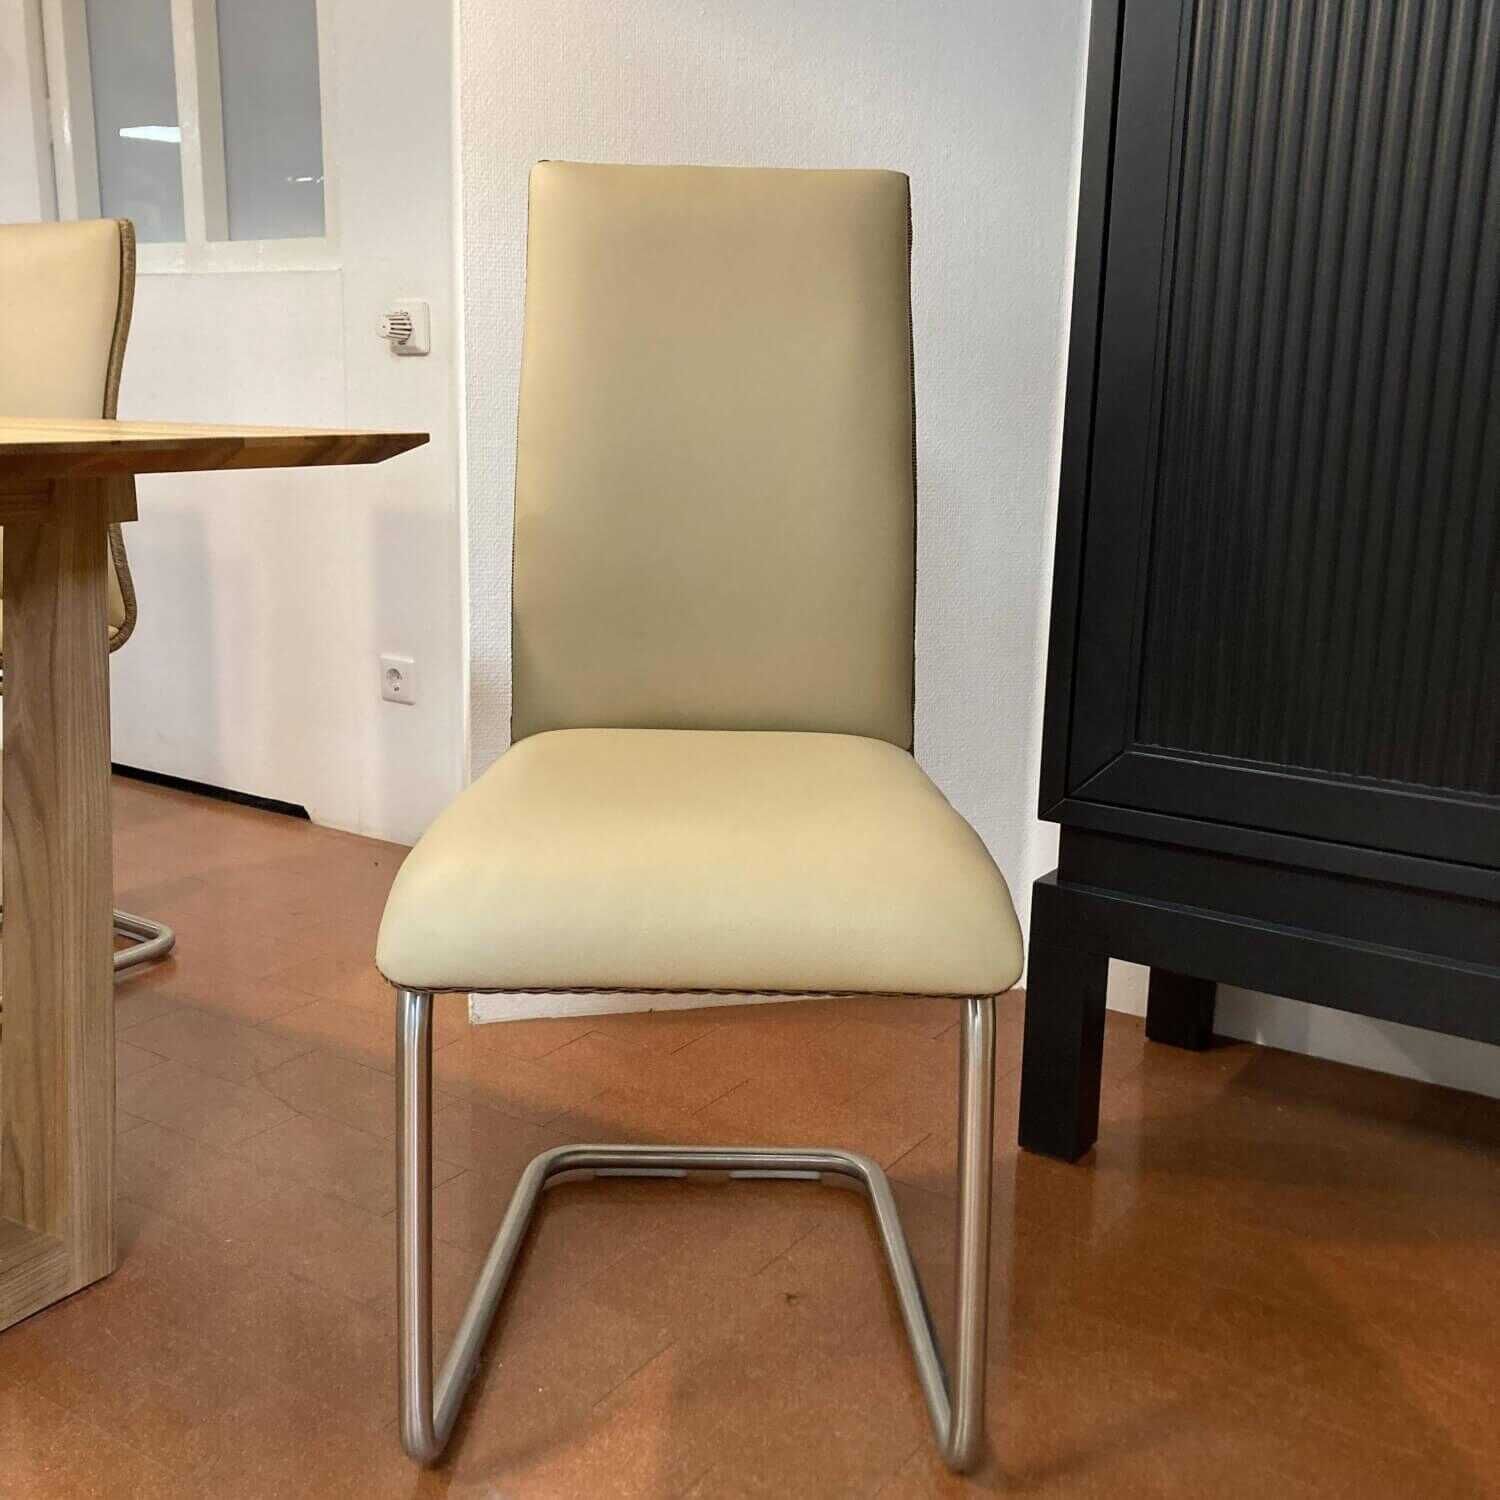 Tischgruppe Veneto Rüster Geölt Tisch Ausklappbar mit Bank und 3 Stühlen